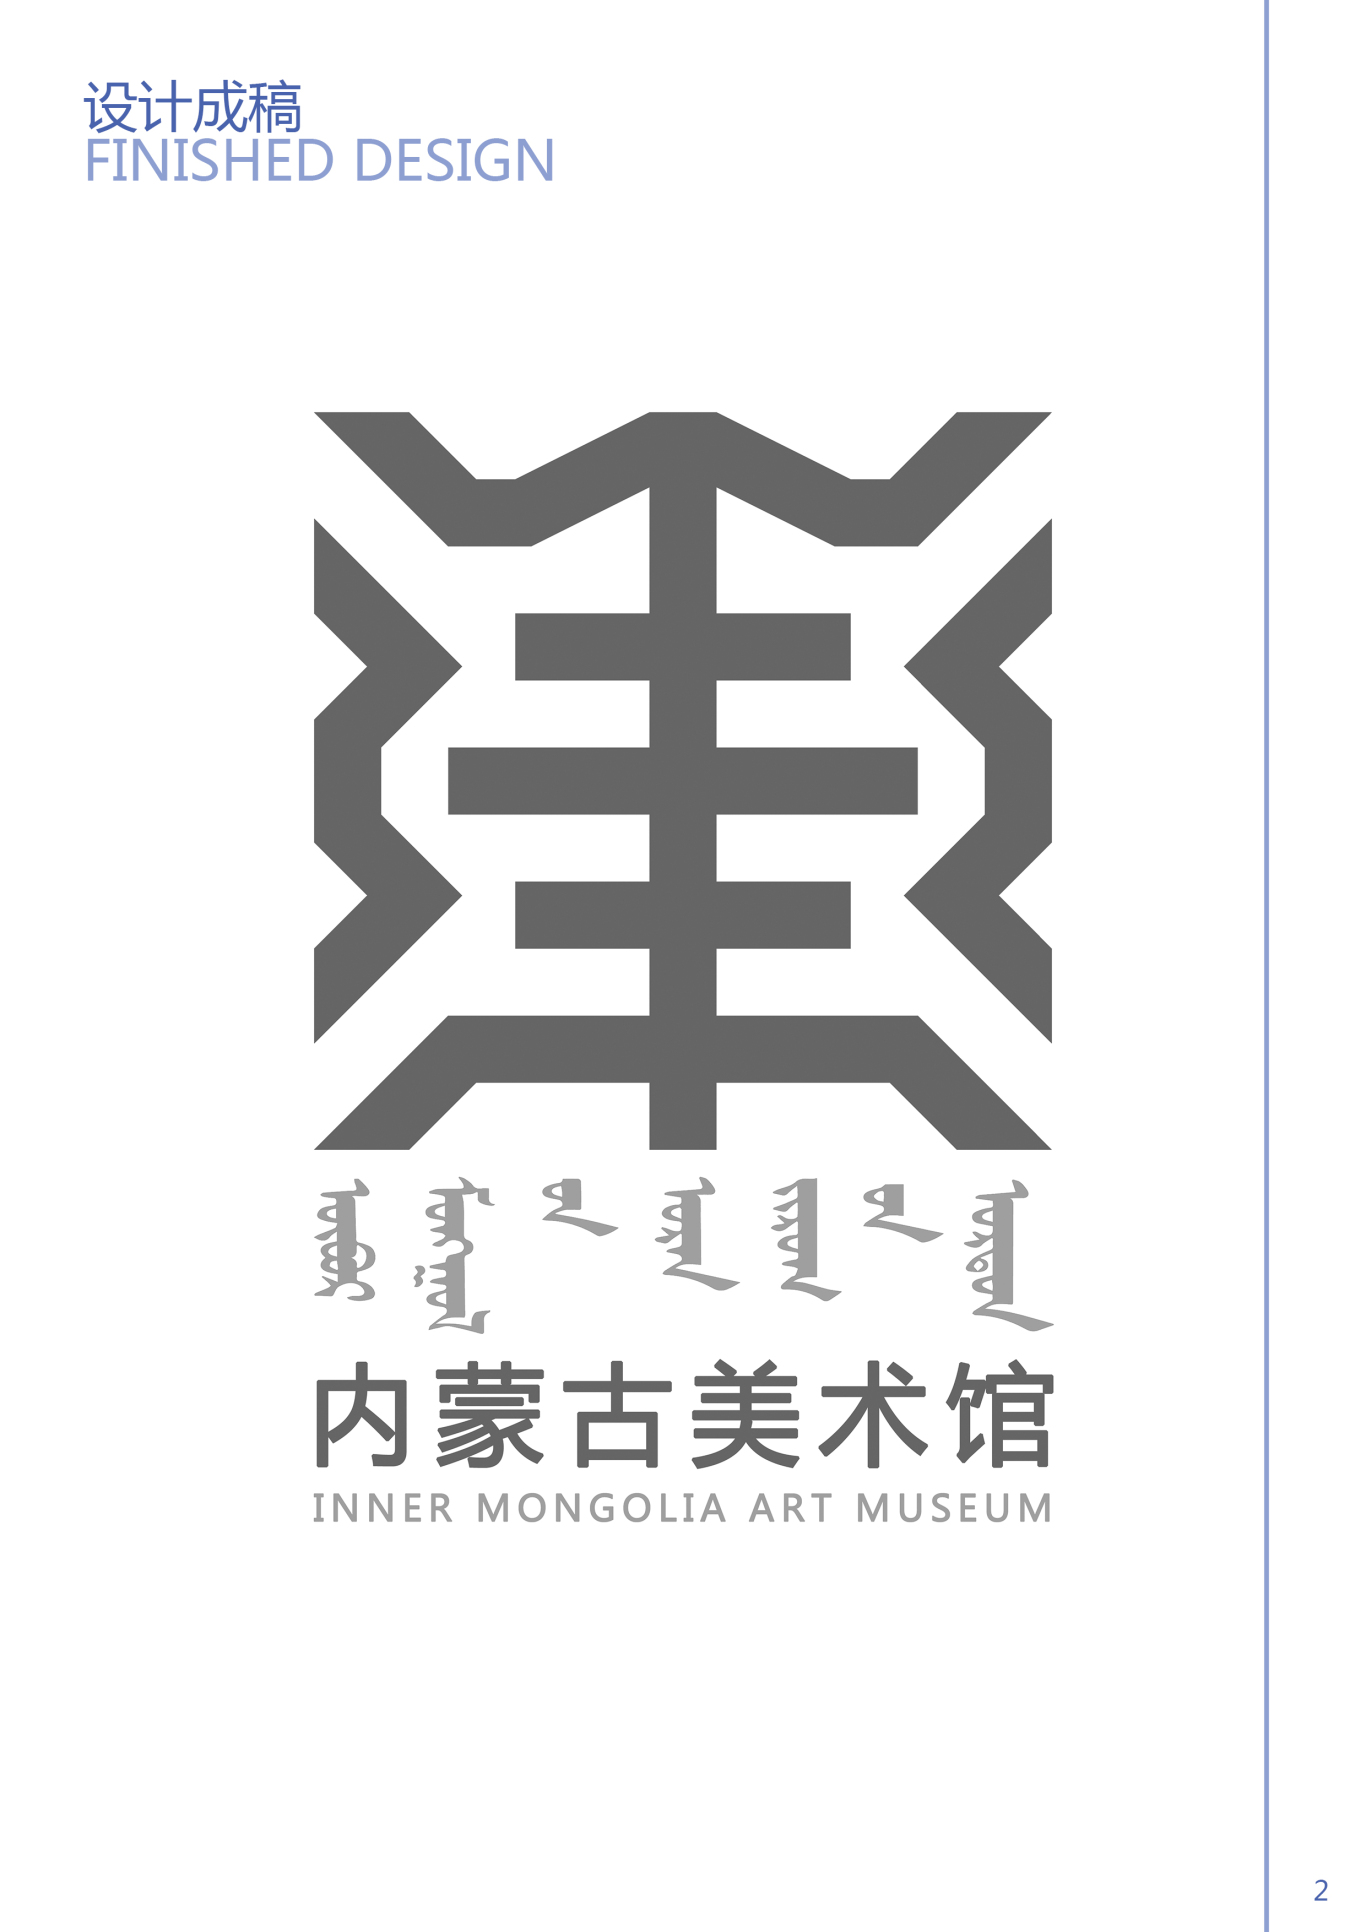 内蒙古美术馆logo图1